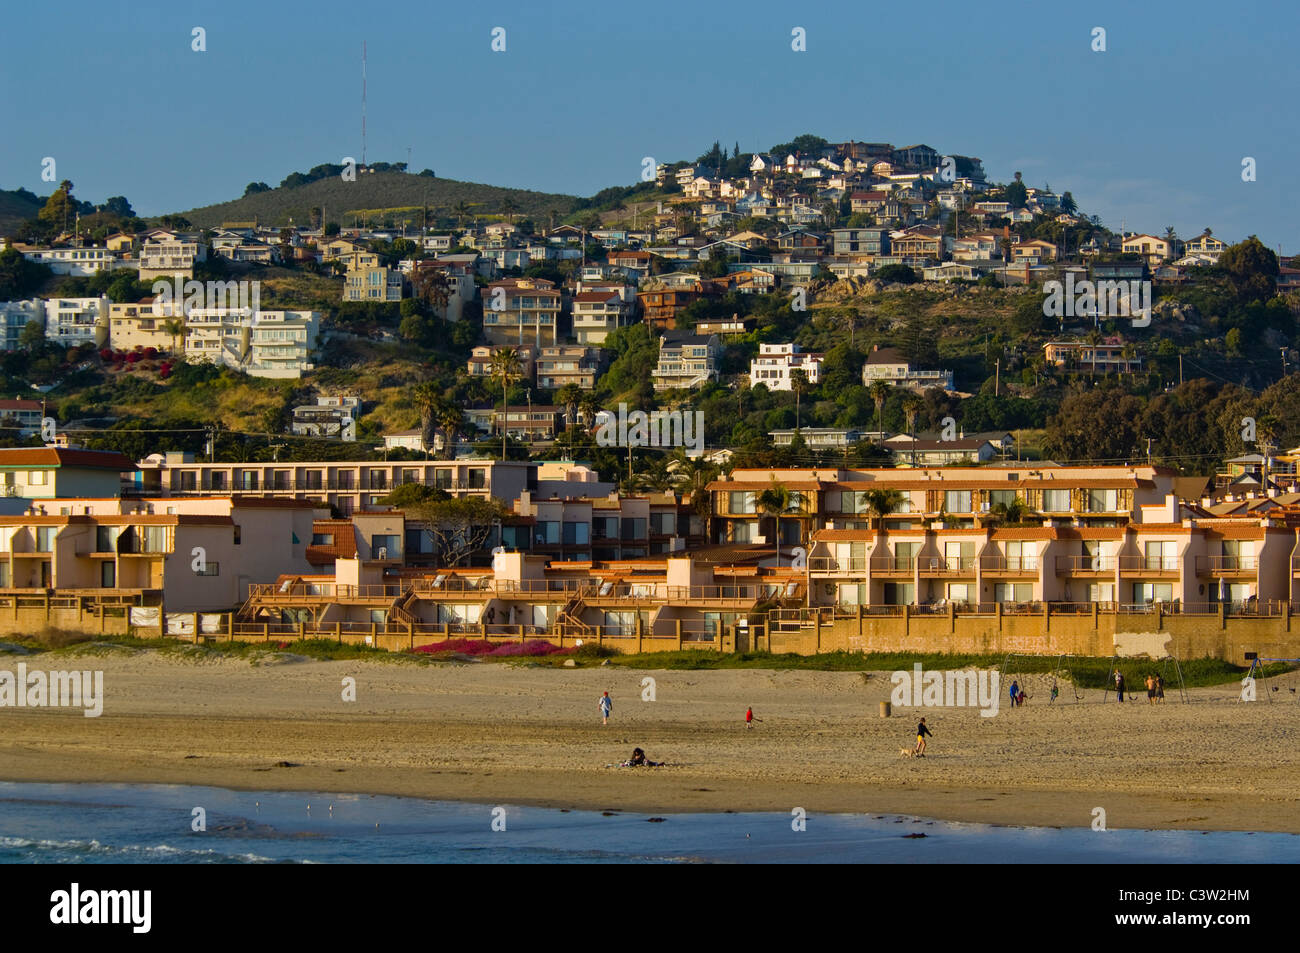 La ville de surf de la côte de Pismo Beach, en Californie Banque D'Images